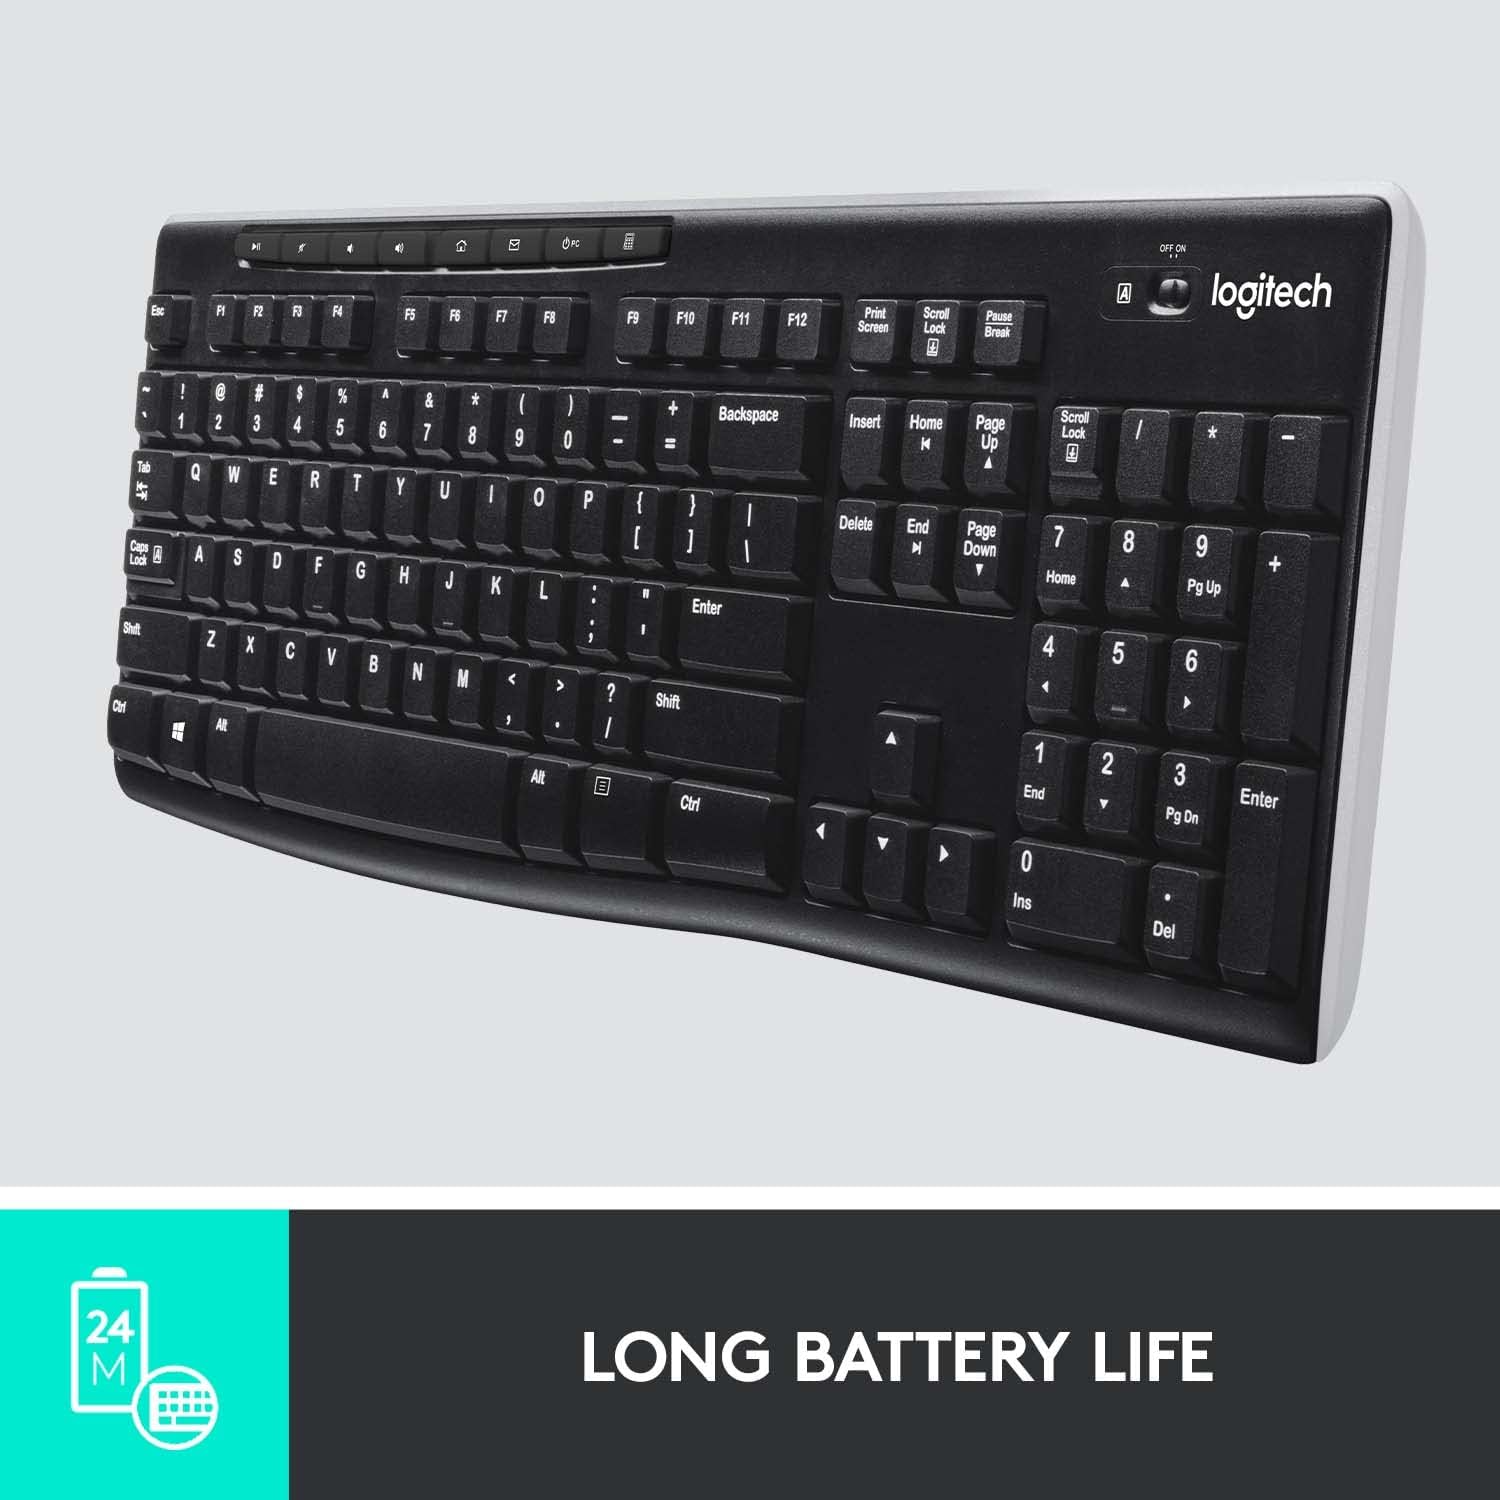 Logitech K270 Wireless Keyboard Price in Pakistan